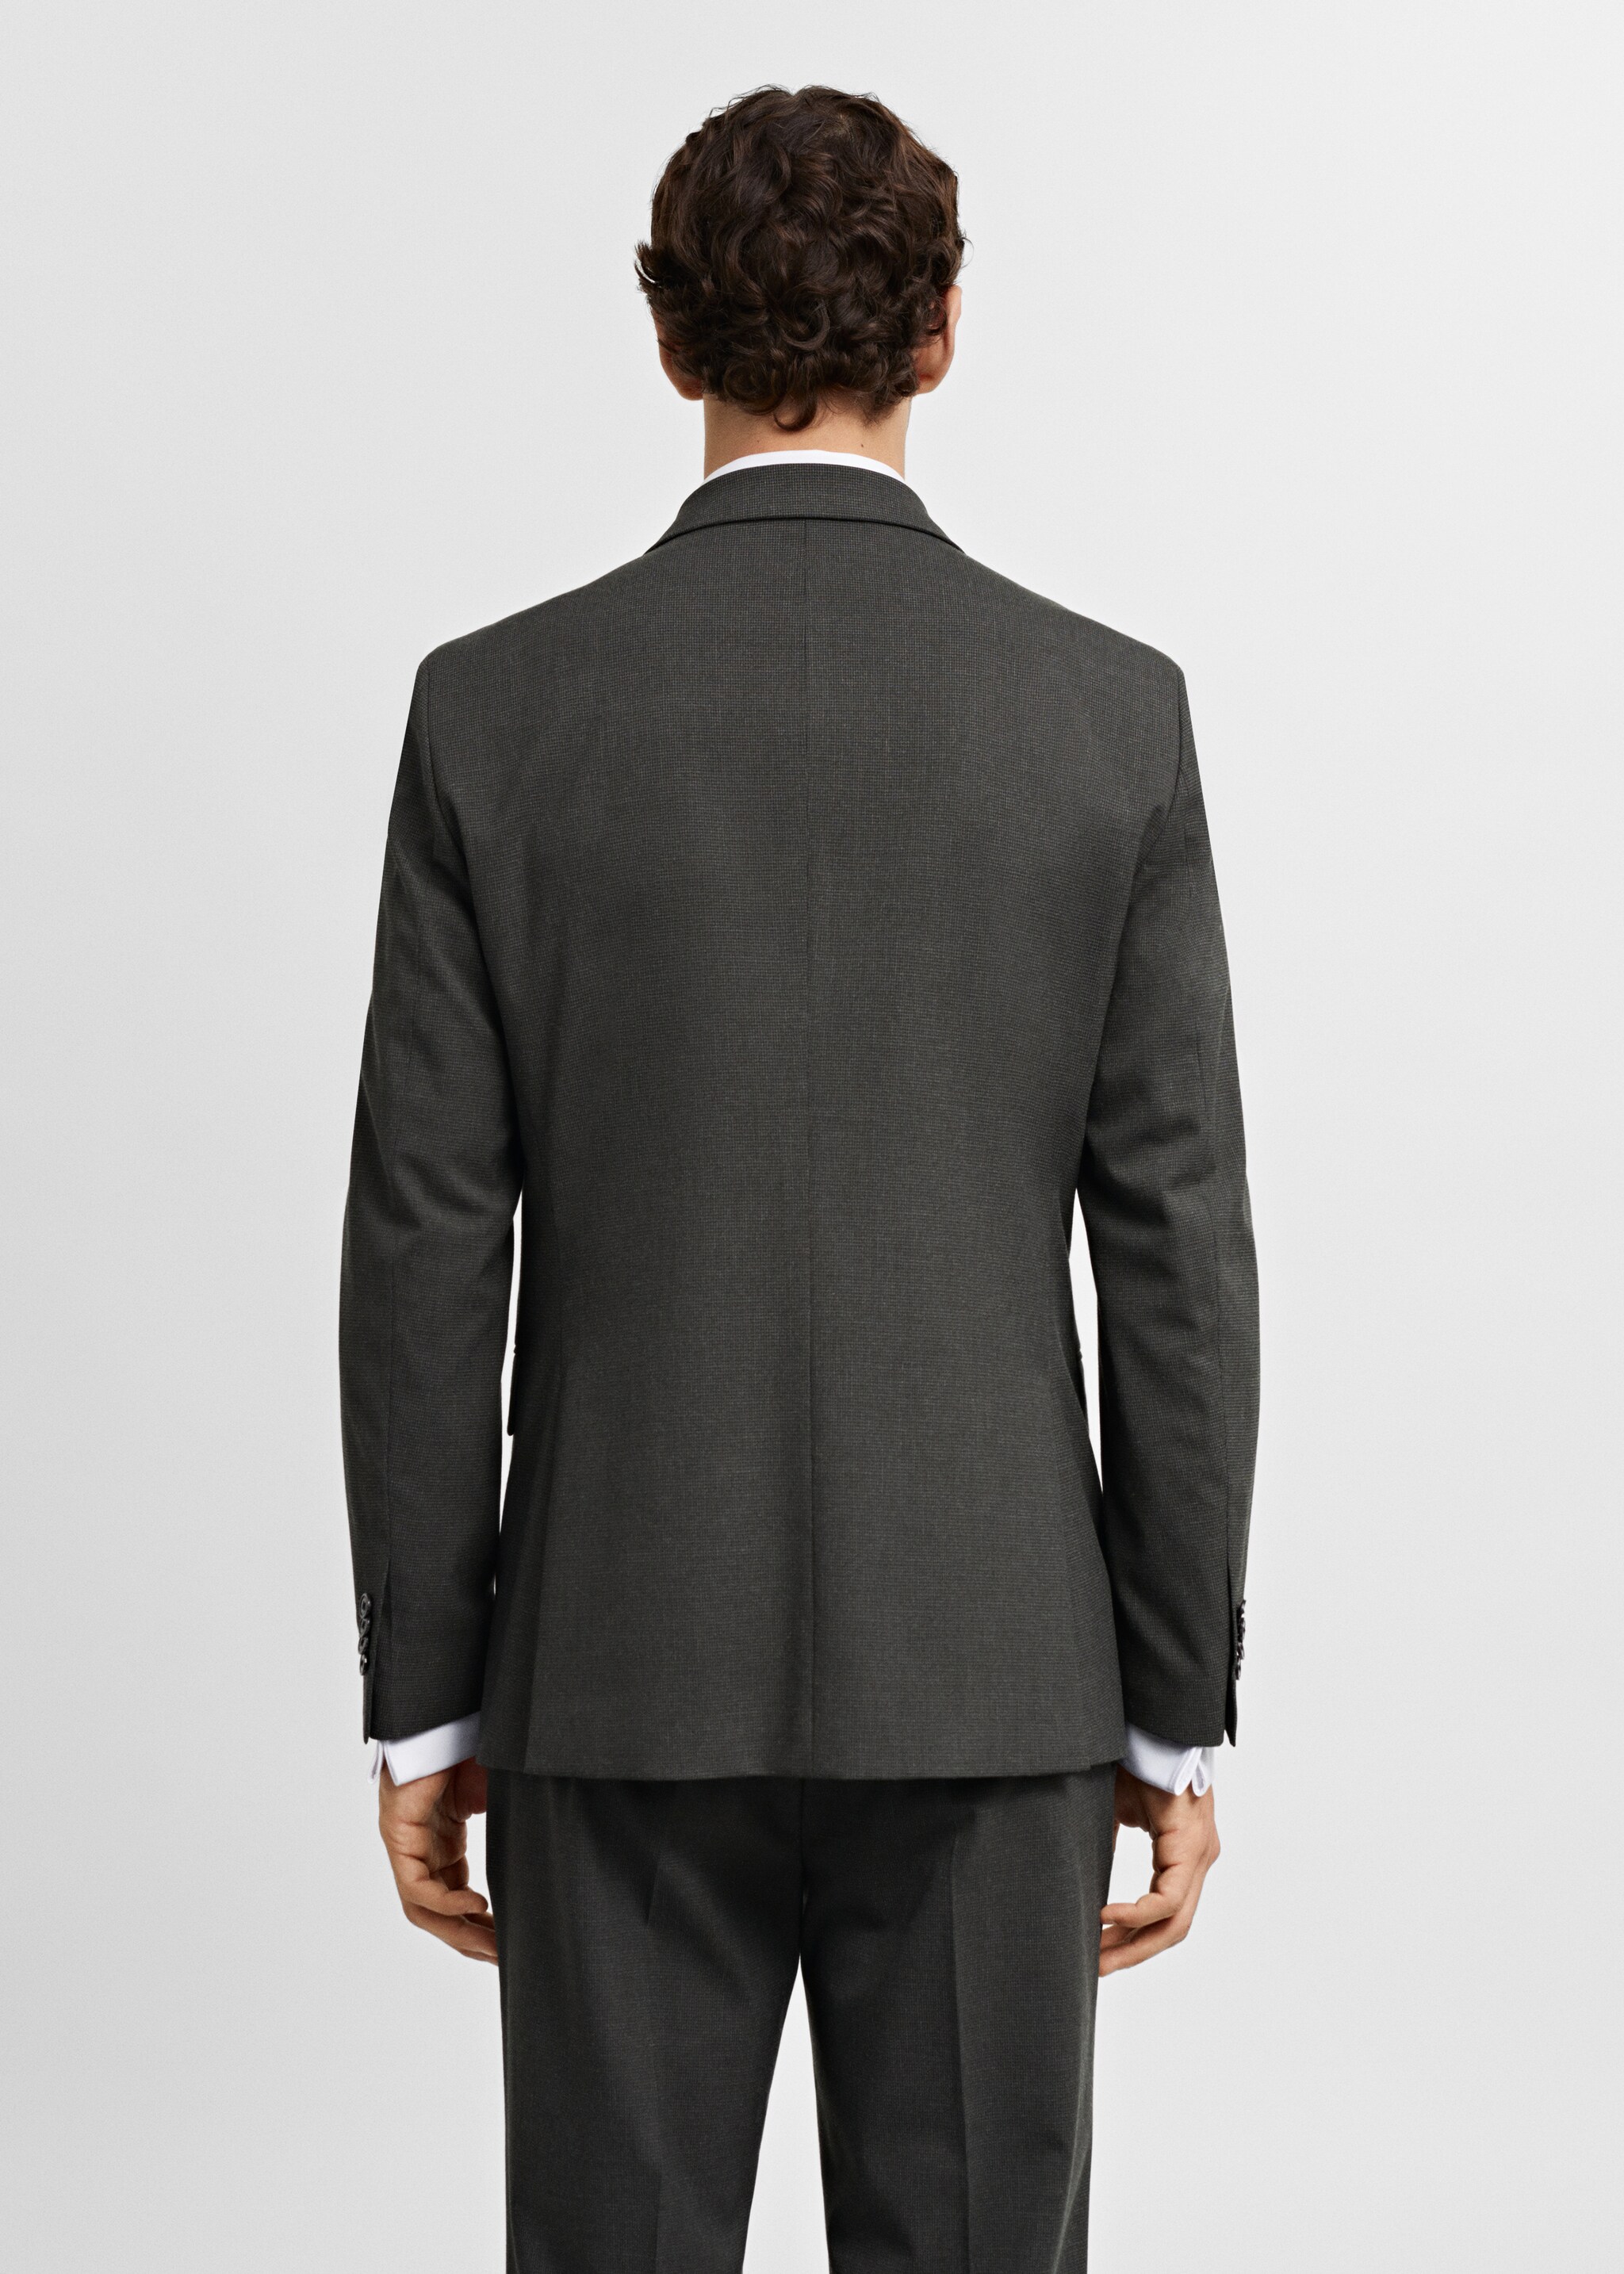 Σακάκι κοστουμιού slim fit ύφασμα stretch - Πίσω όψη προϊόντος